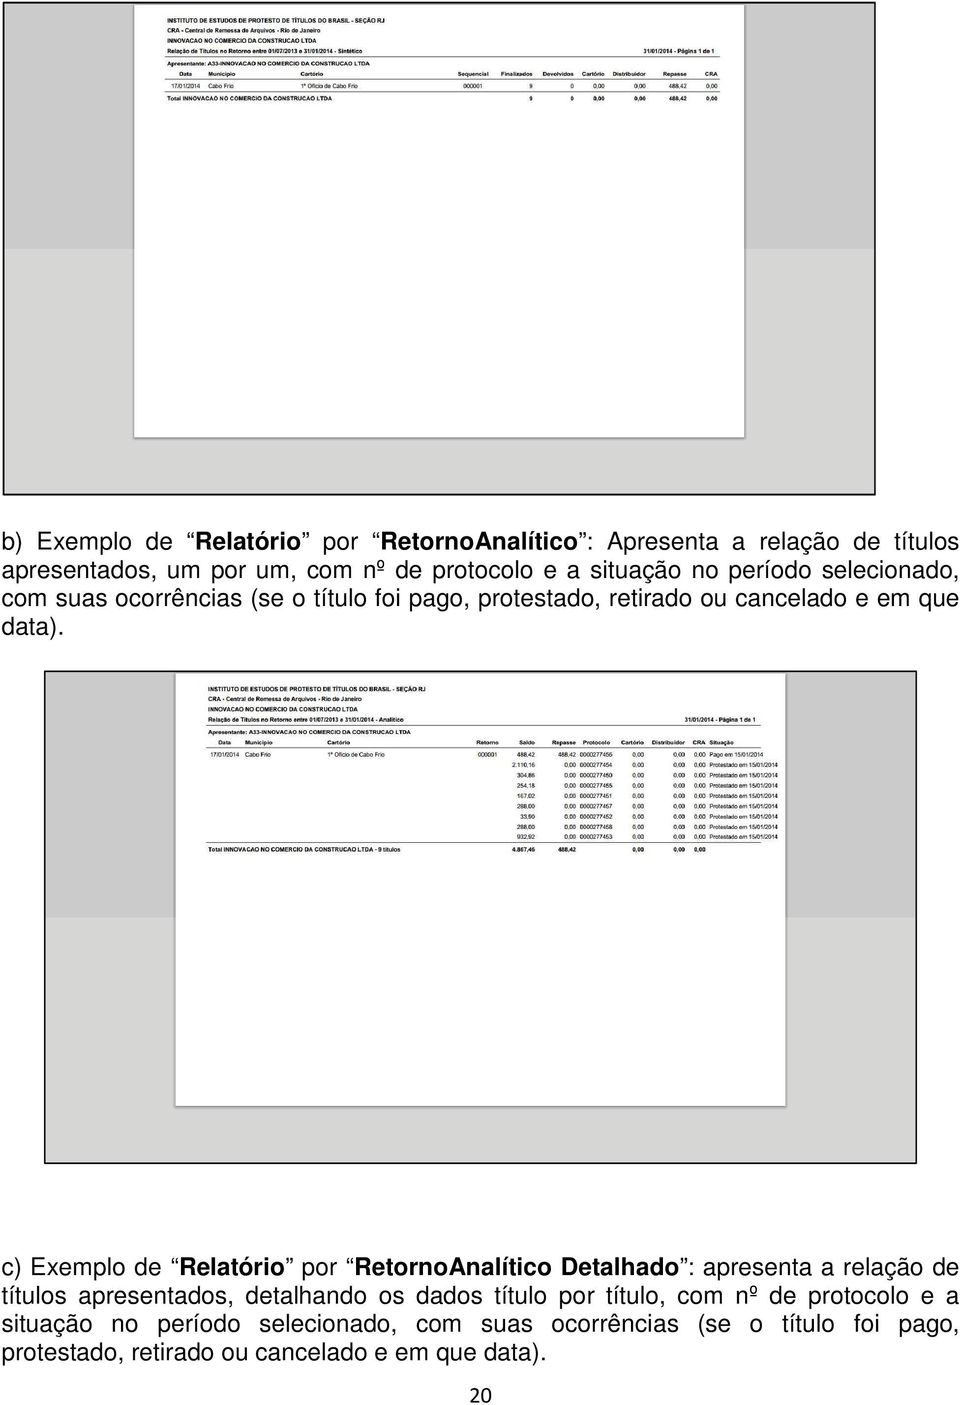 c) Exemplo de Relatório por RetornoAnalítico Detalhado : apresenta a relação de títulos apresentados, detalhando os dados título por